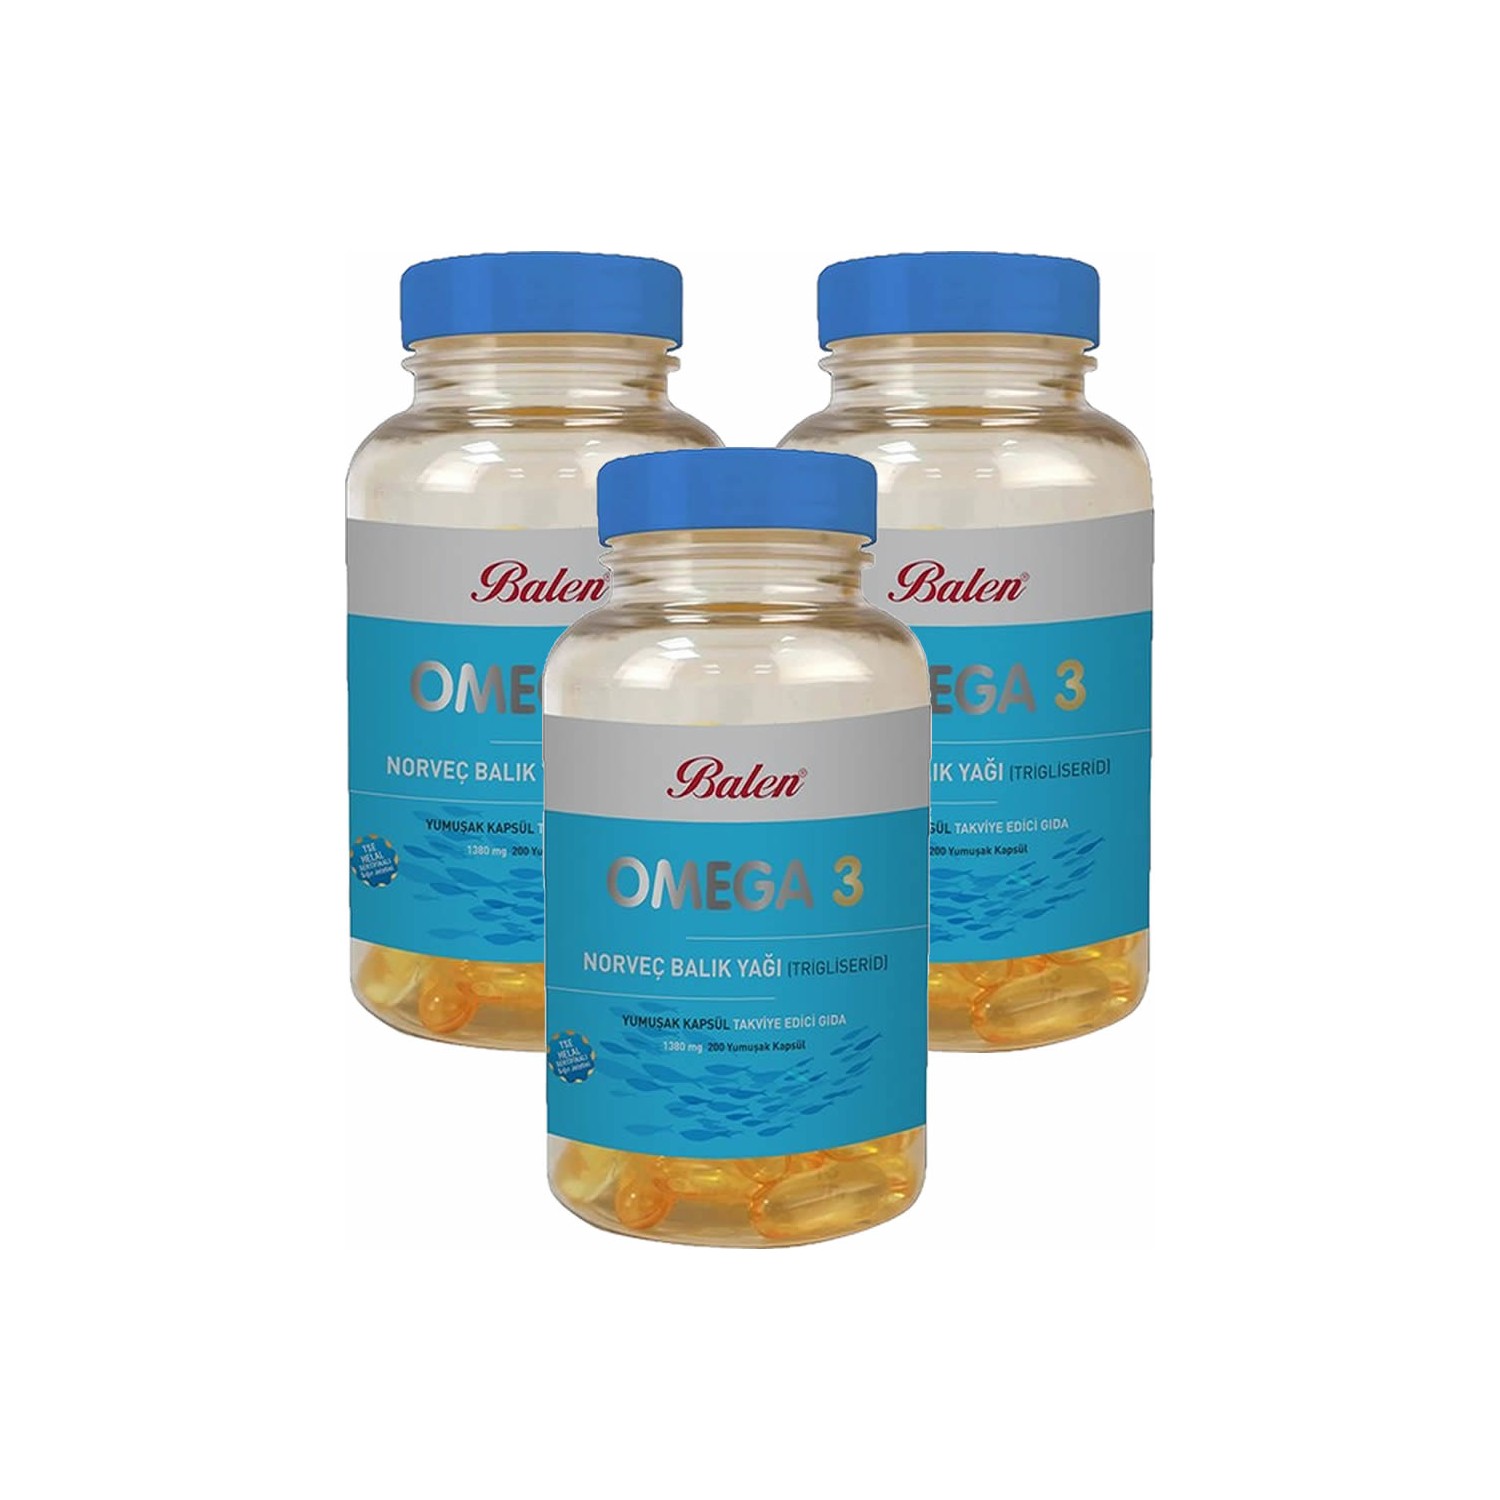 1win комплекс super omega 3 1320 мг 120 капсул 1win omega Норвежский рыбий жир Balen Omega-3 (триглицерид) 1380 мг, 3 упаковки по 200 капсул